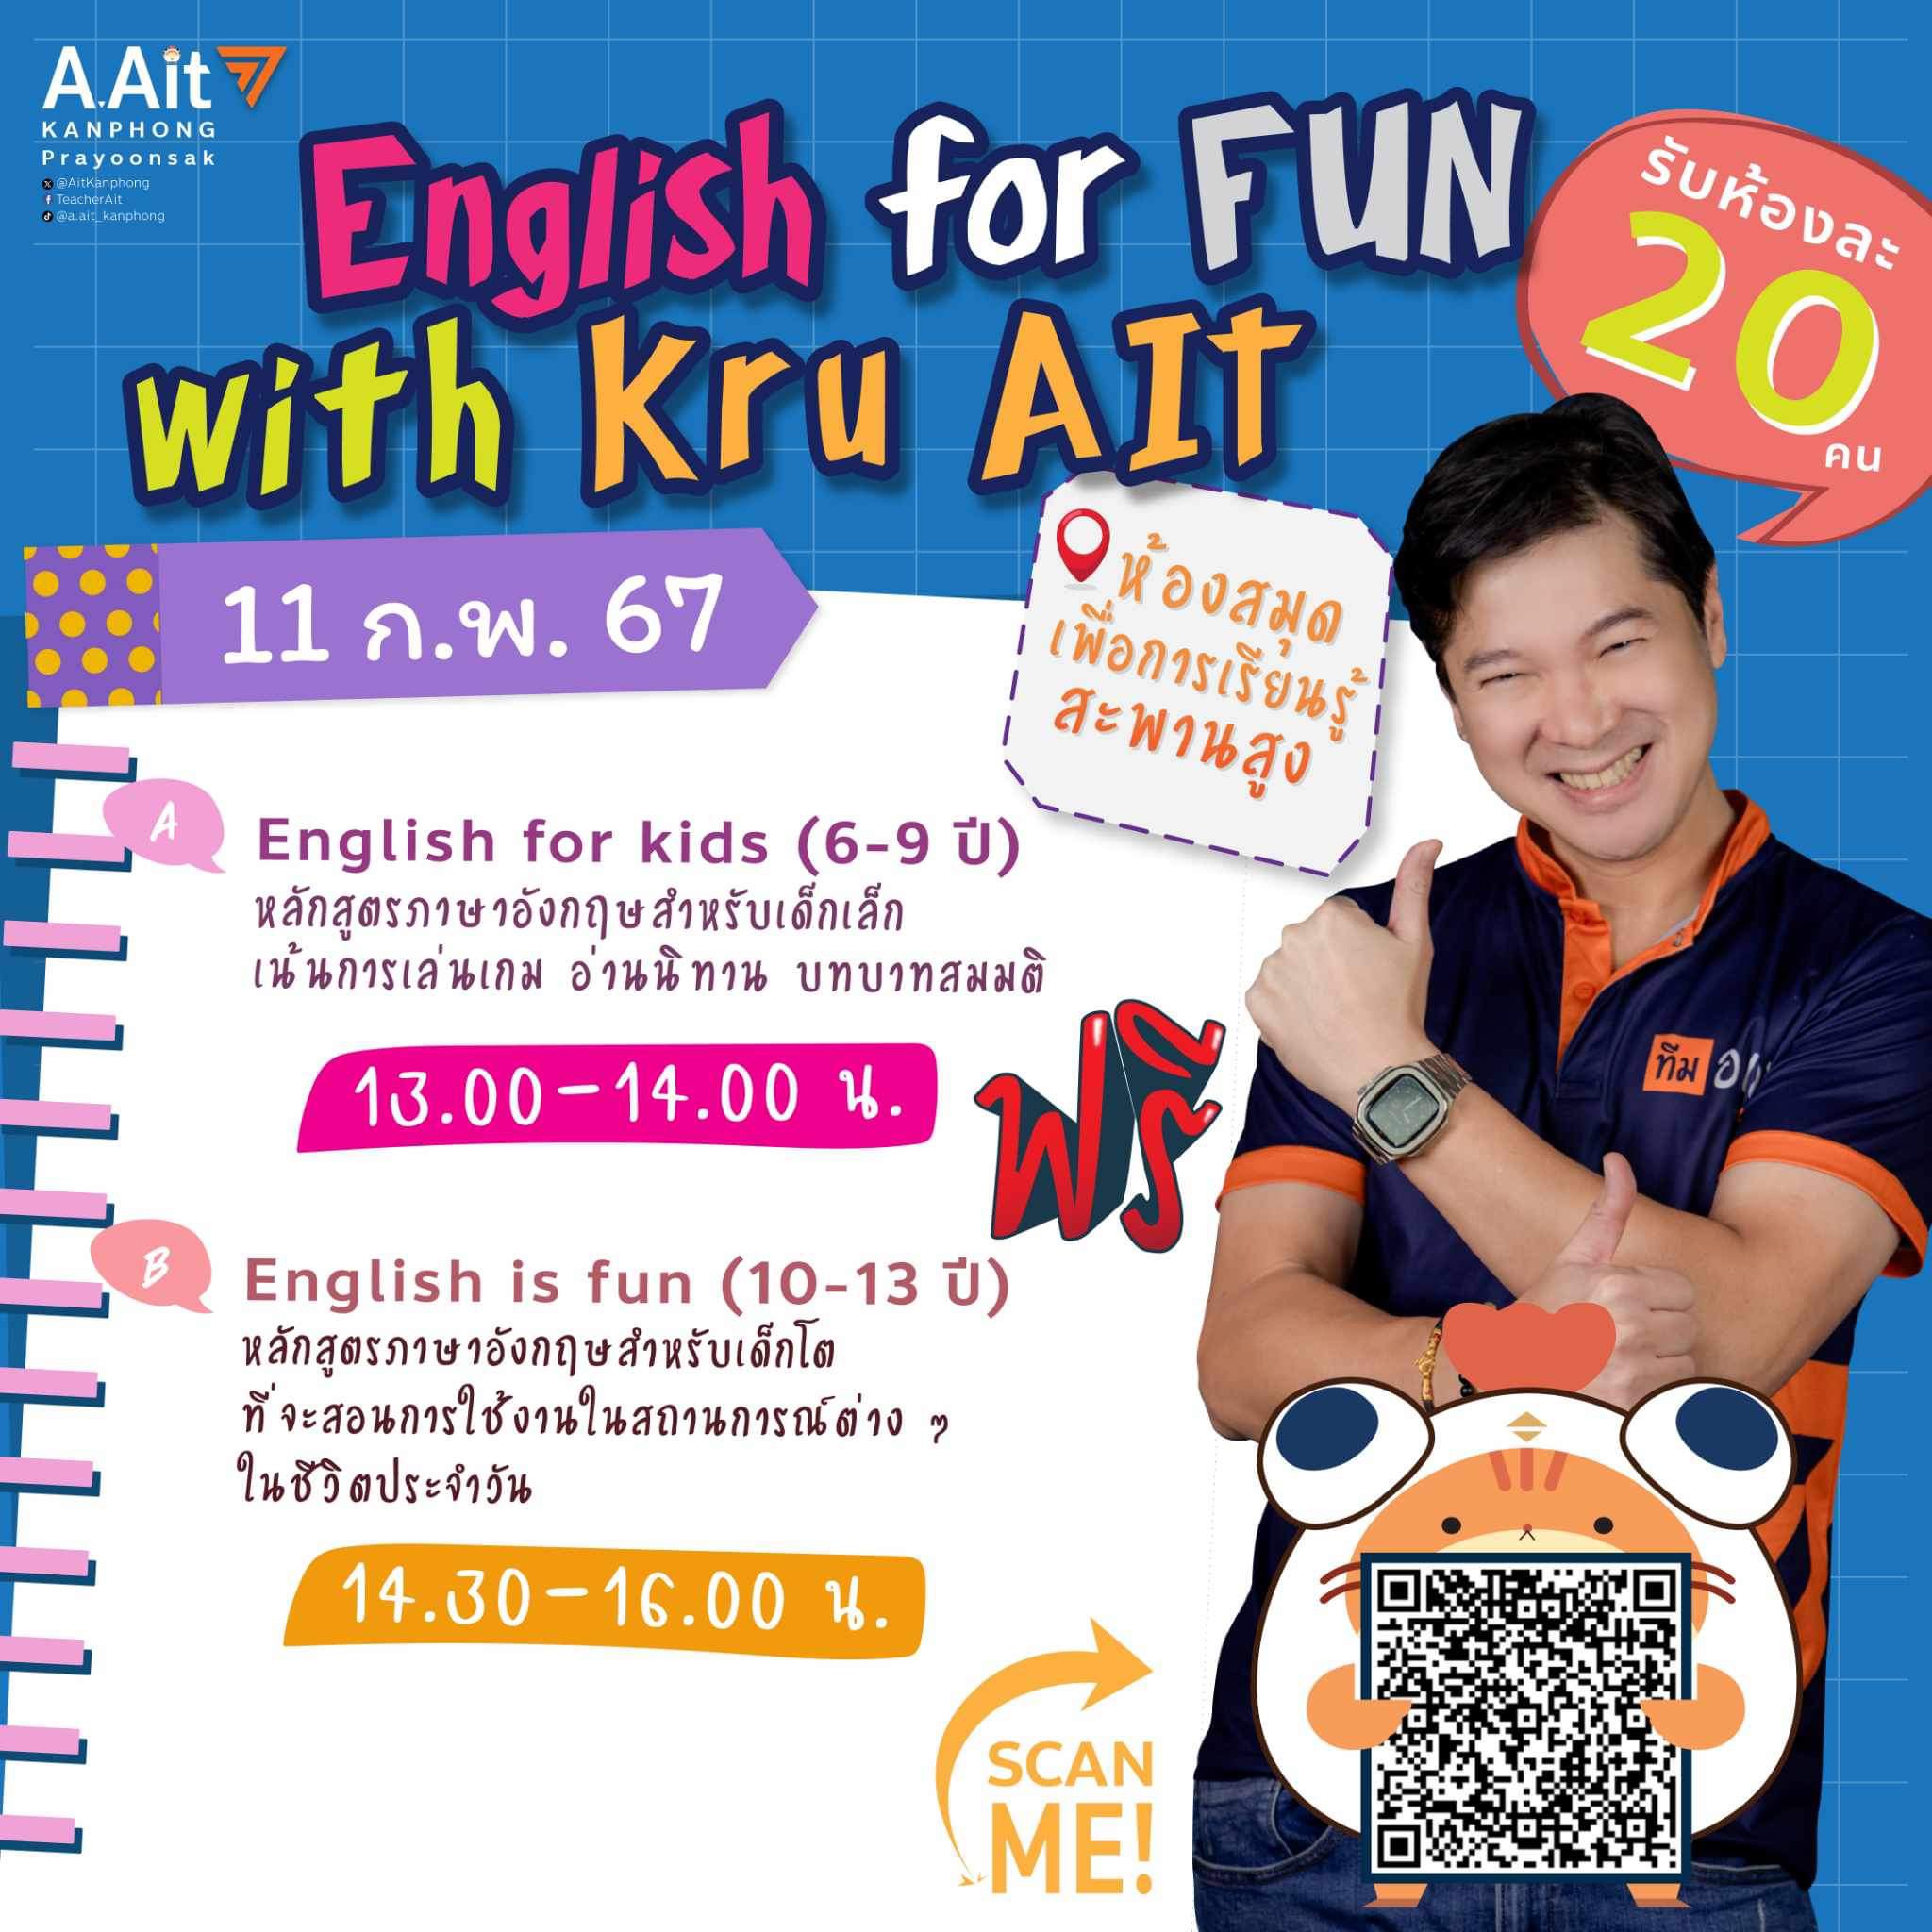 กิจกรรม "English for FUN with Kru Ait"